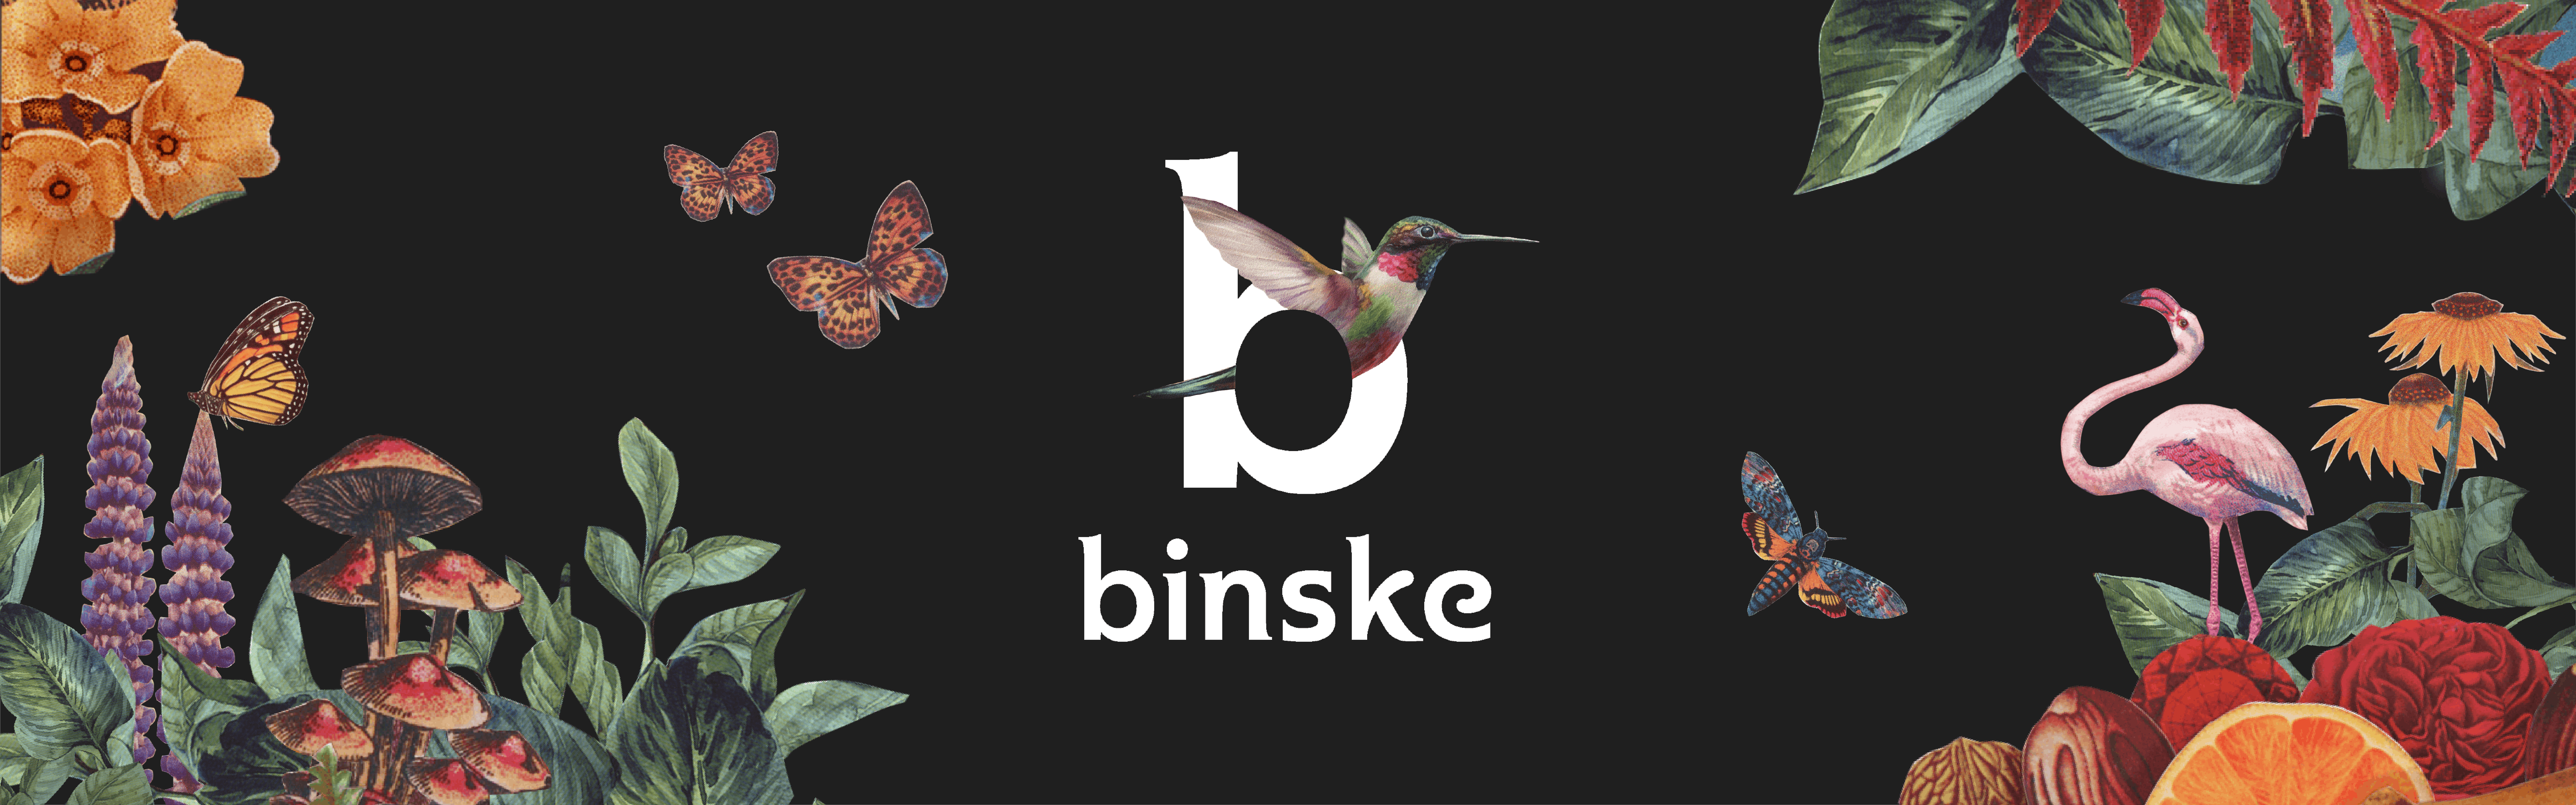 binske banner